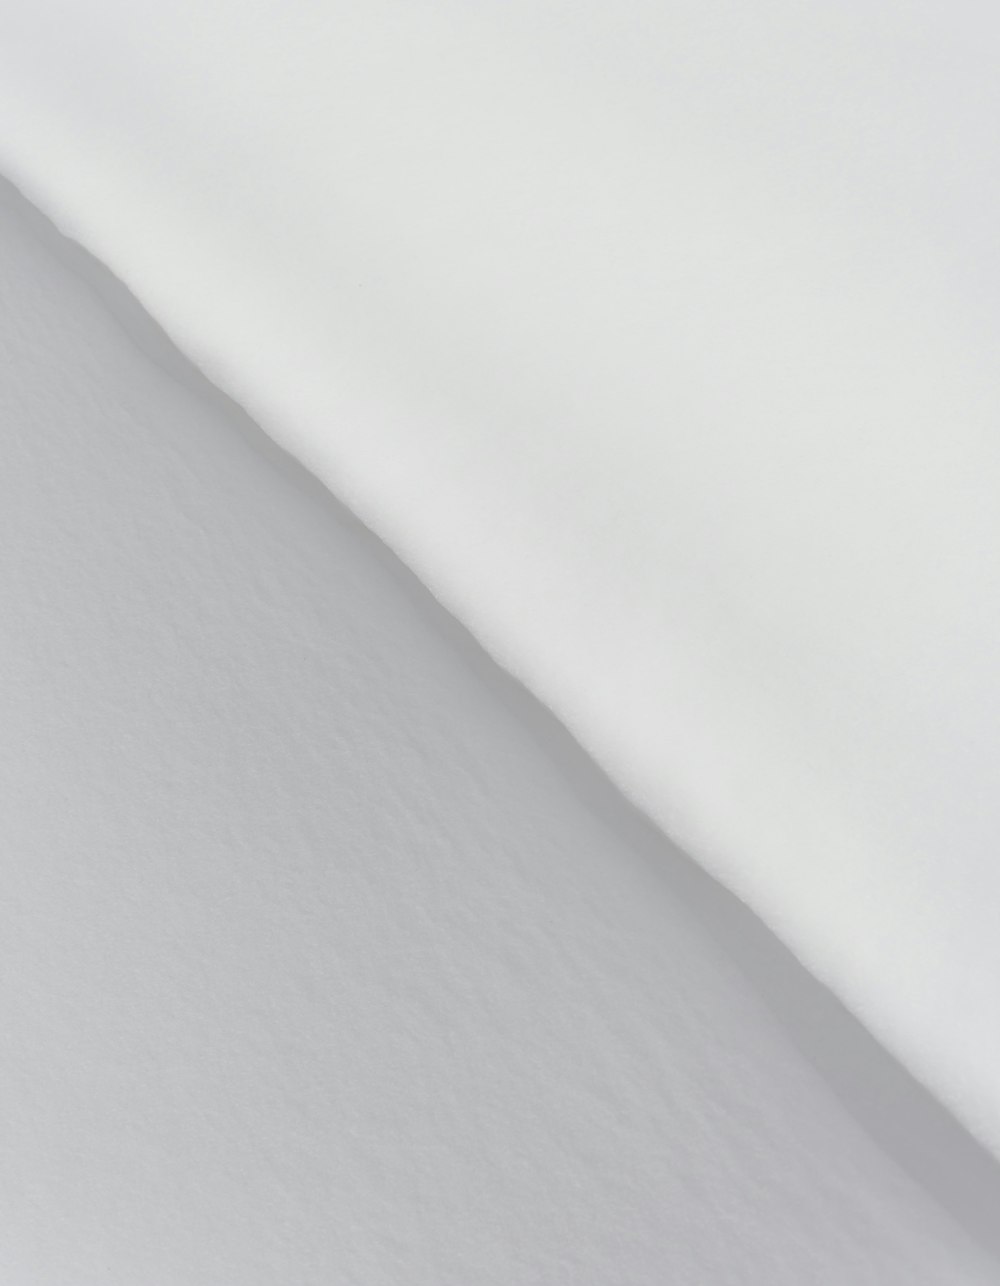 una persona esquiando por una pendiente cubierta de nieve